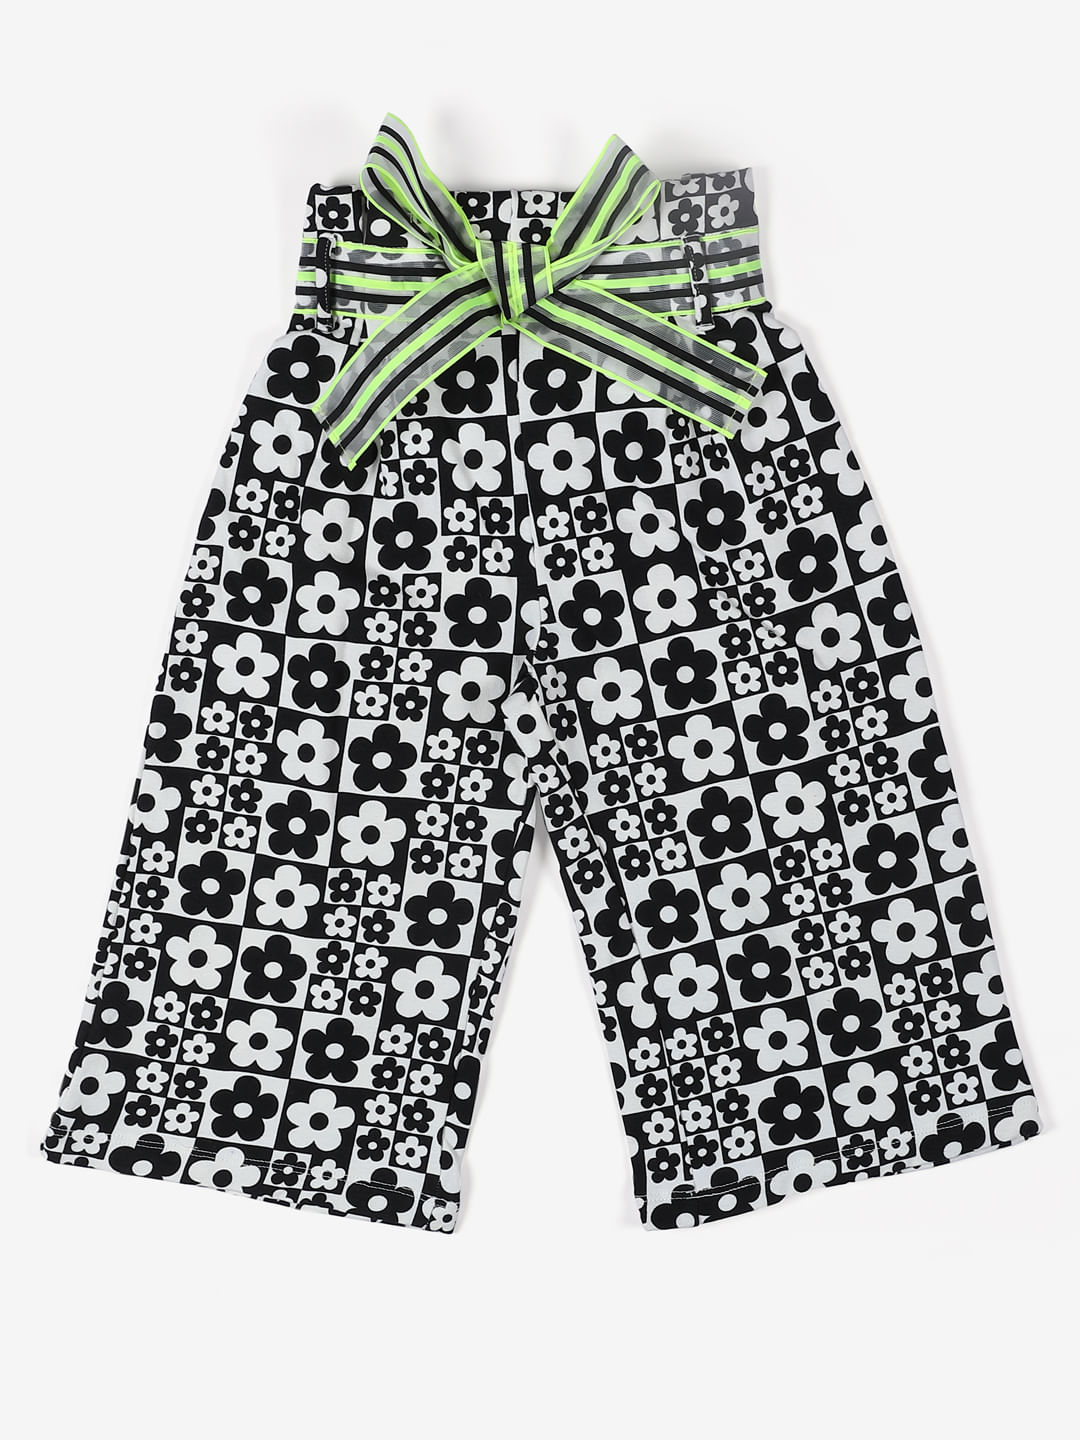 Buy Girls Black  White Tweed Print Boot Leg Pants Online at Sassafras